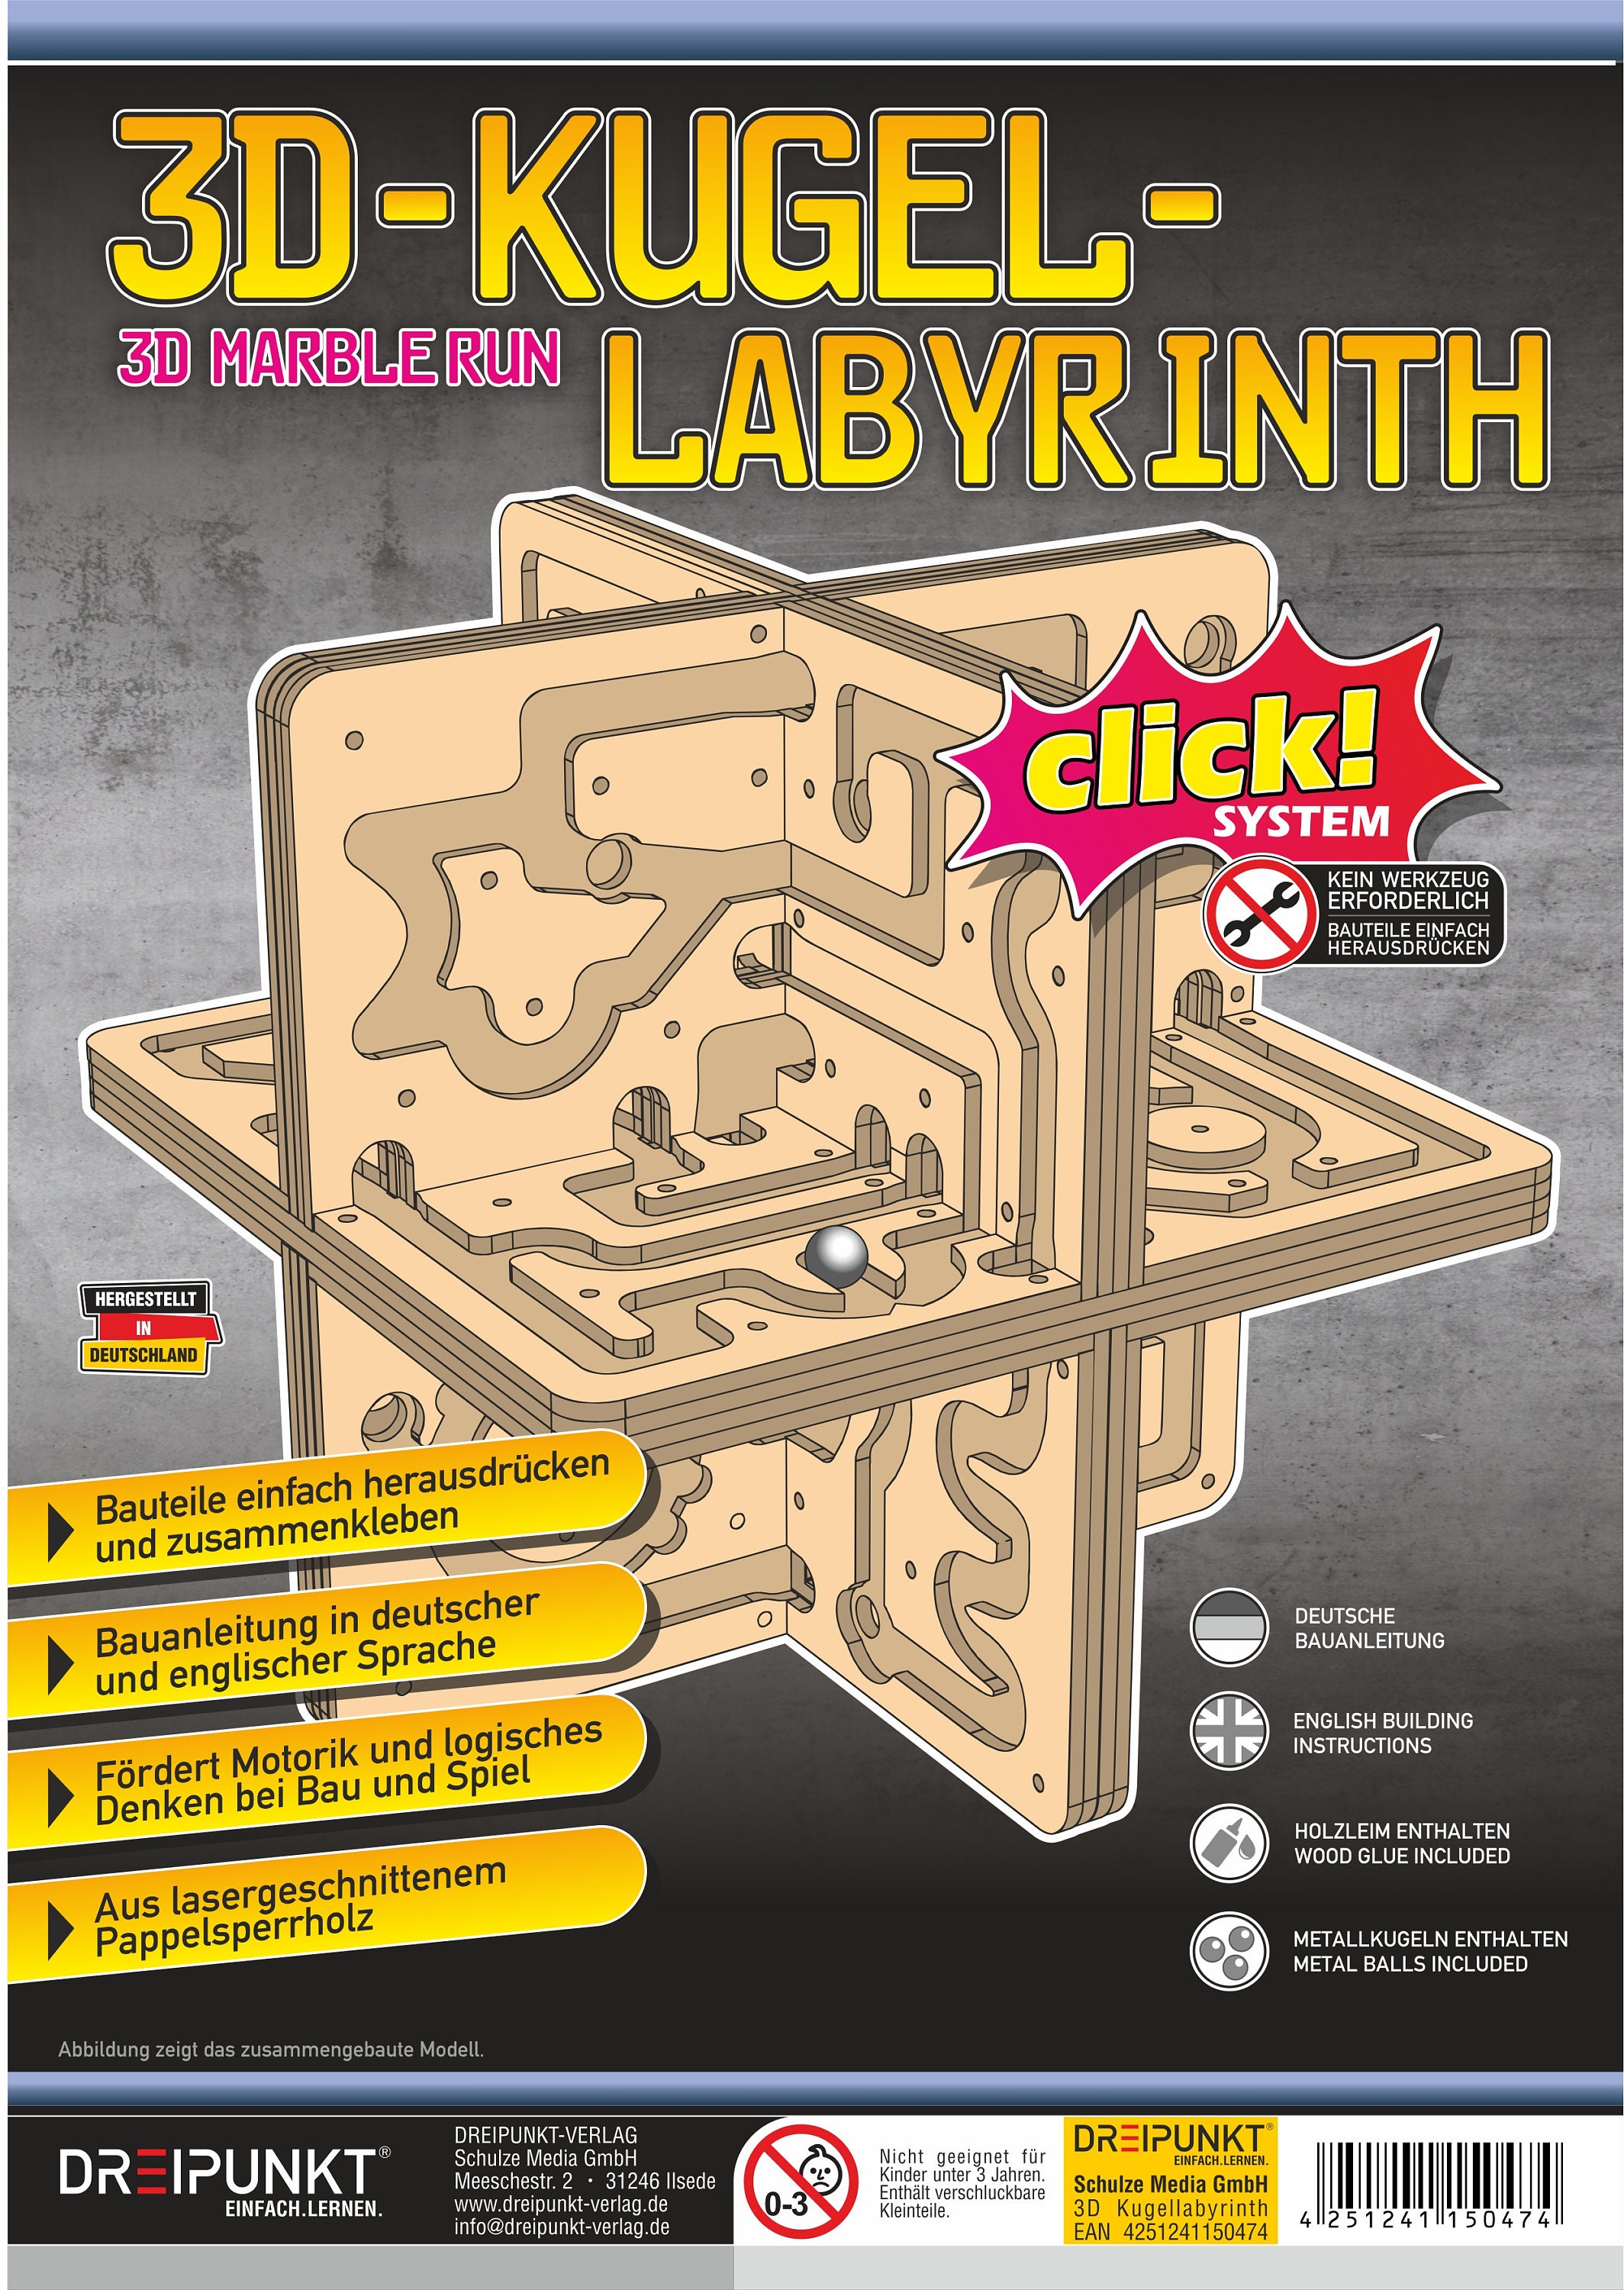 Casse-tête labyrinthe 3D en forme de boule avec 208 étapes au